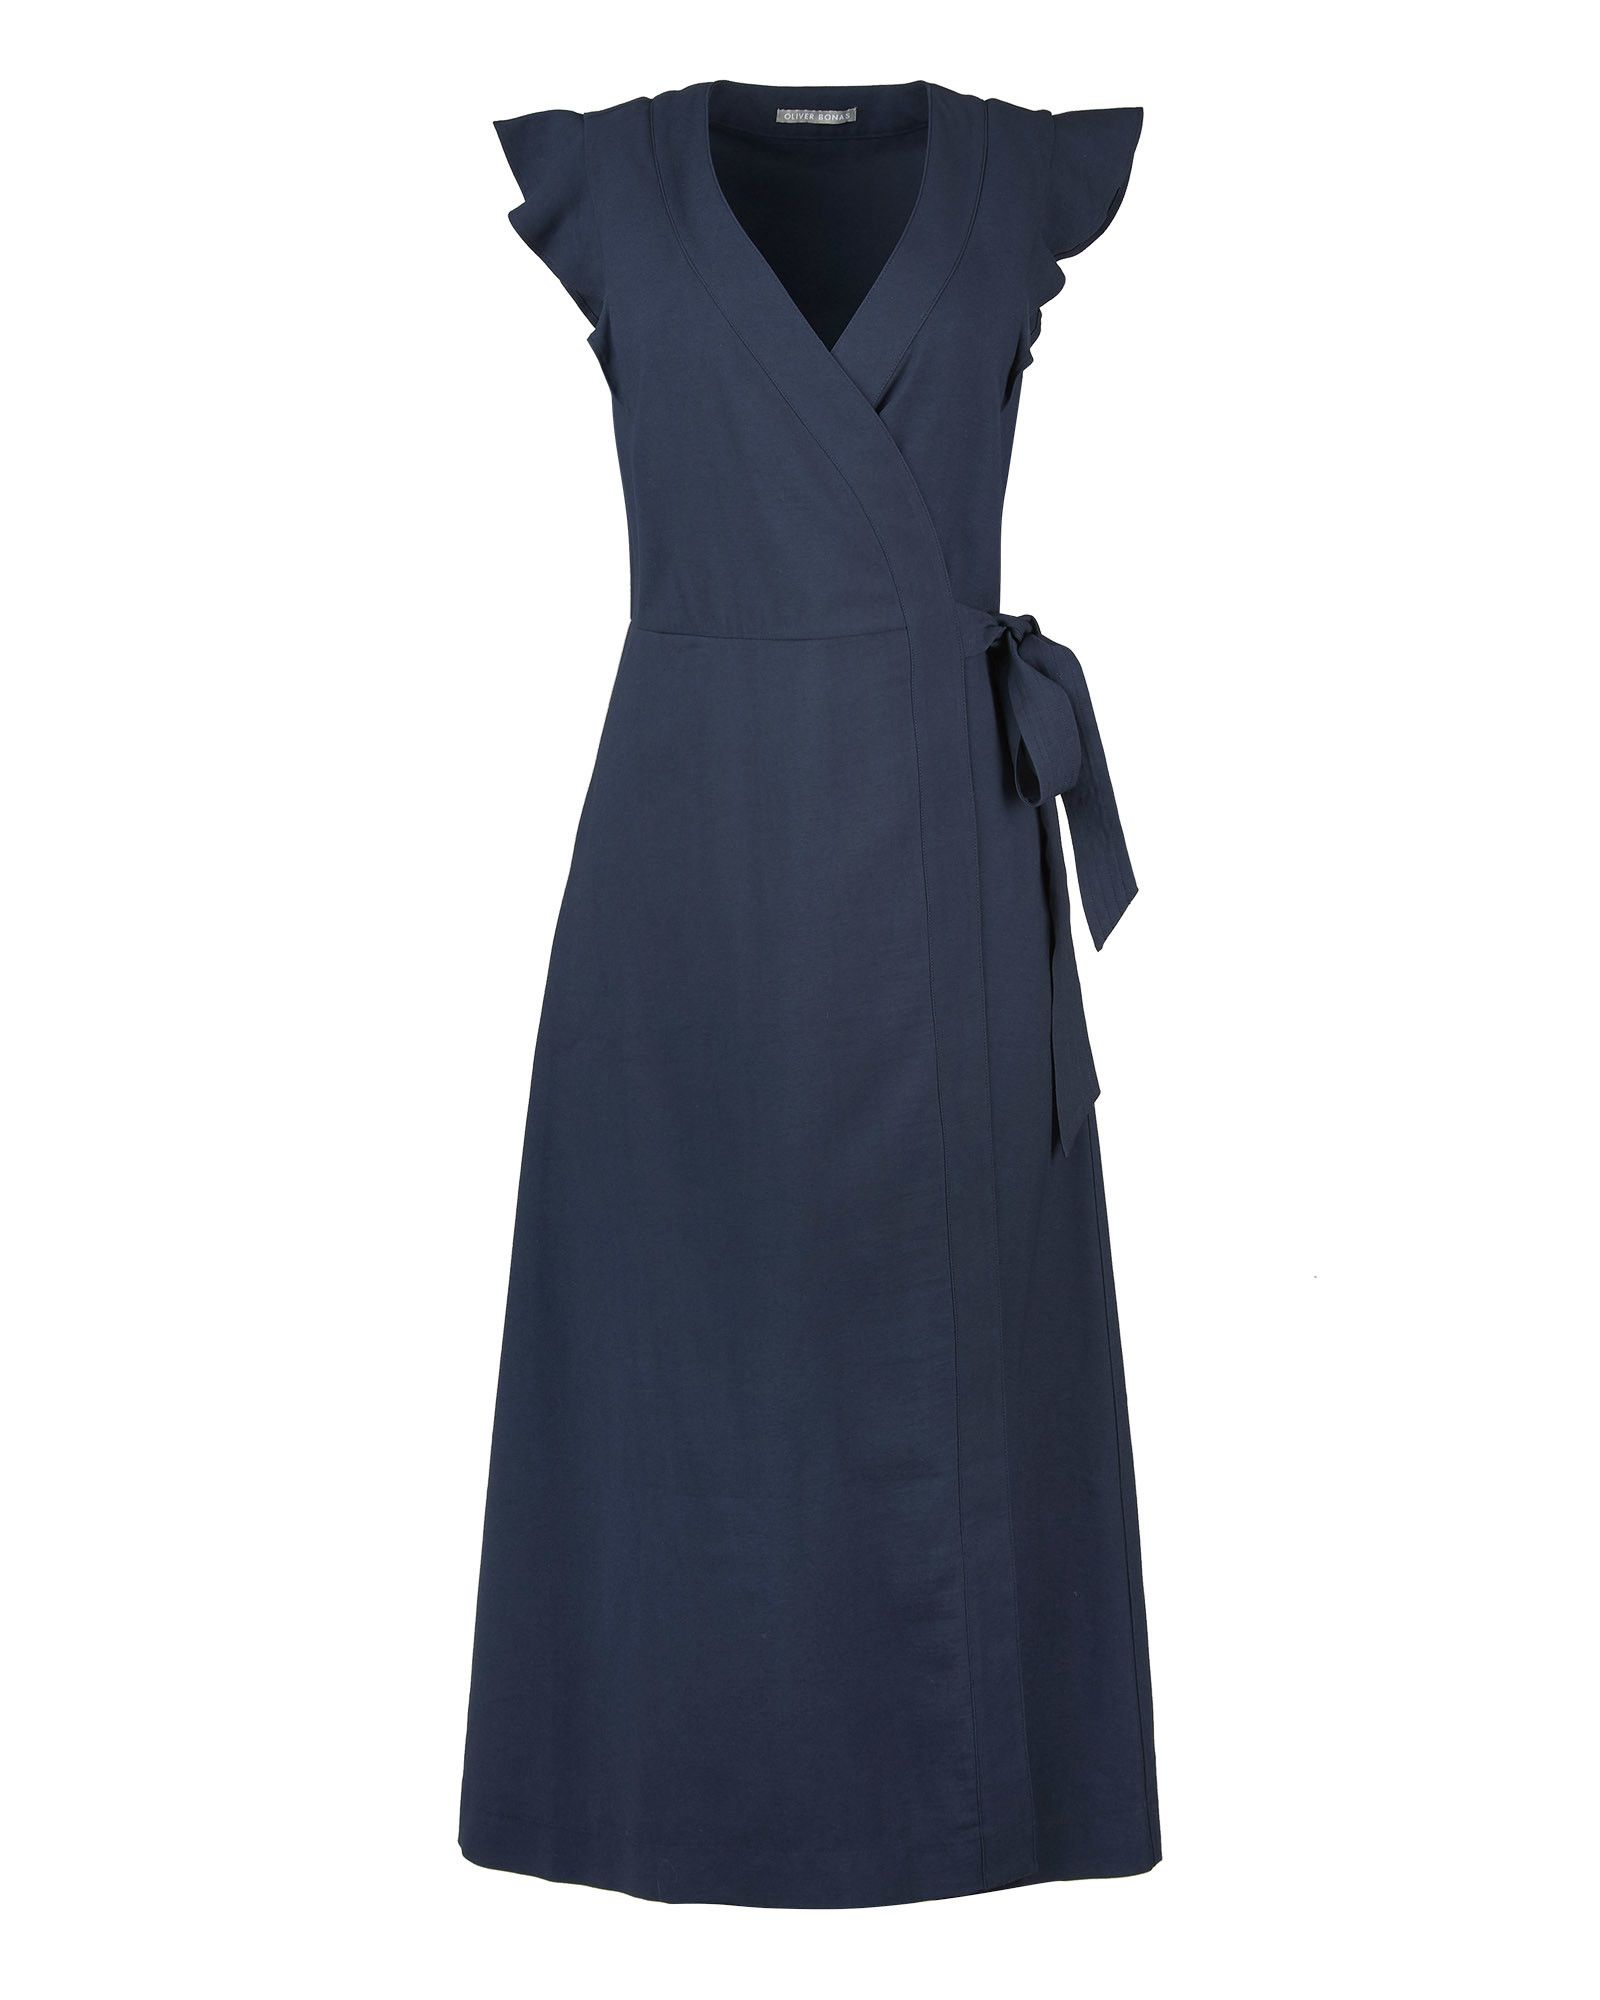 Ruffle Sleeve Navy Blue Midi Wrap Dress ...